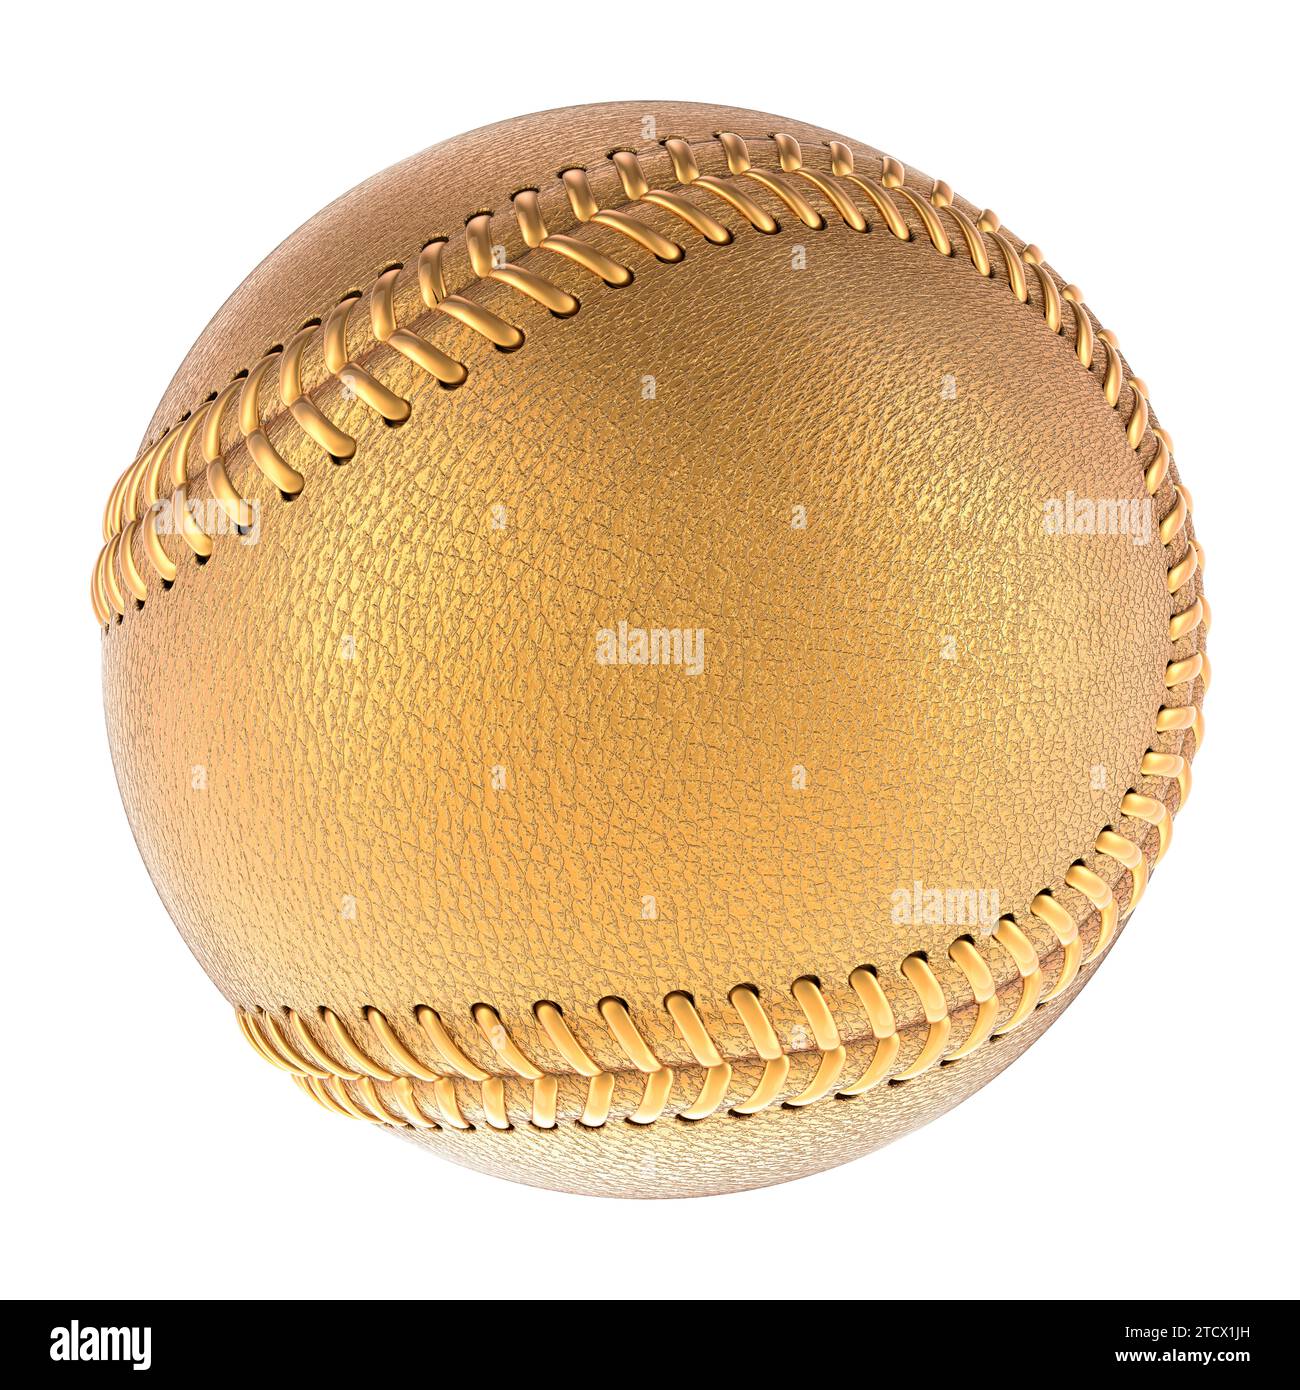 Balle de baseball dorée, rendu 3D isolé sur fond blanc Banque D'Images